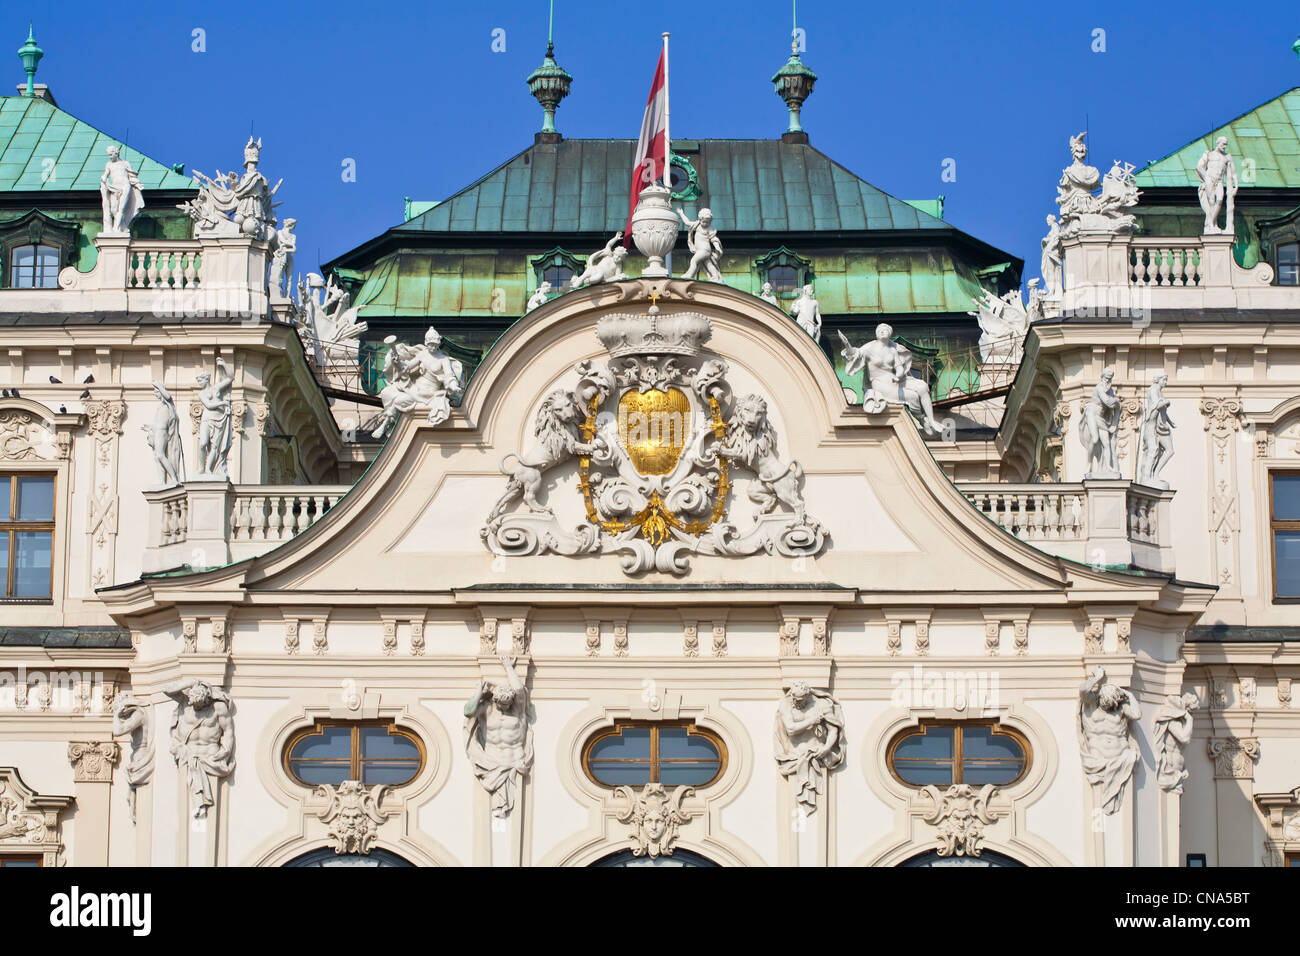 Austria, Vienna, Belvedere Palace Baroque directed by Johann Lukas von Hildebrandt in the early 18th century, Upper Belvedere Stock Photo